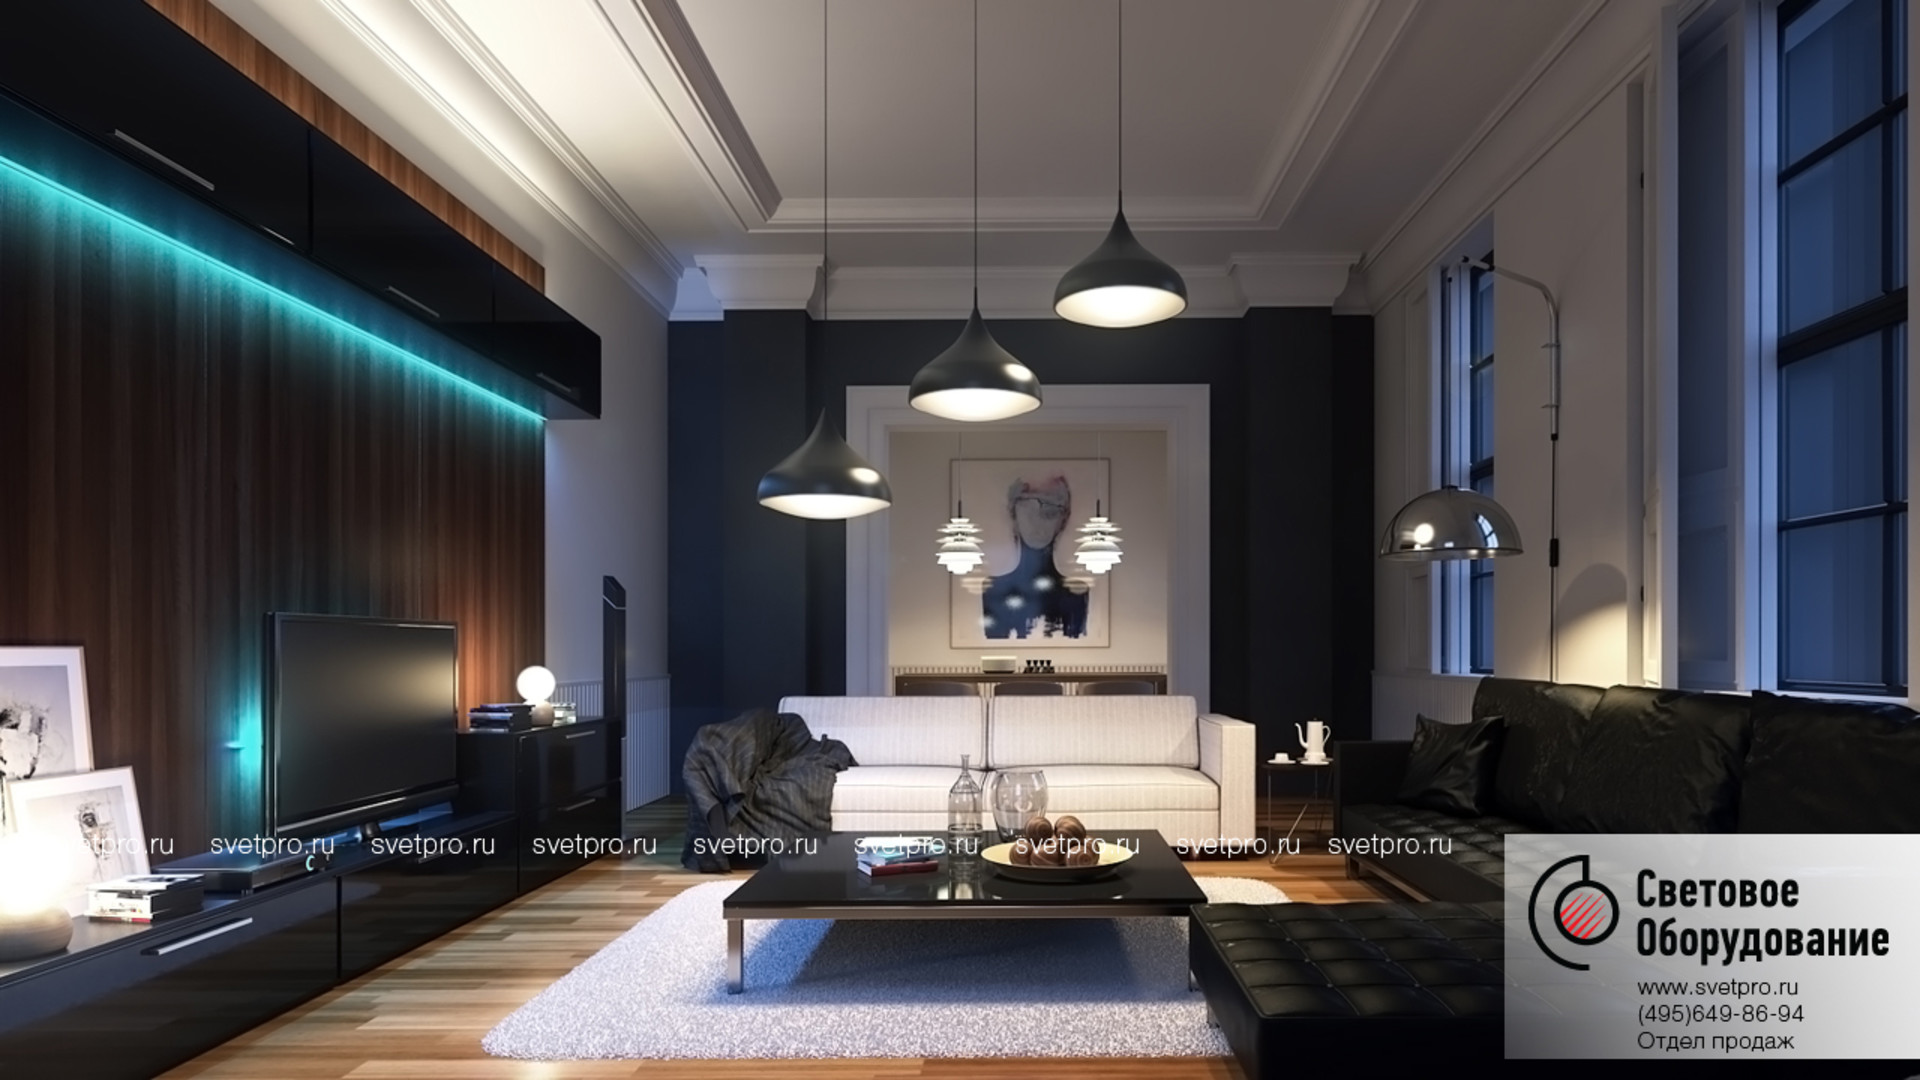 G c lighting. Рендер интерьера в 3ds Max. Interior Lighting 3ds Max. Современное освещение в интерьере. Подсветка в интерьере квартиры.